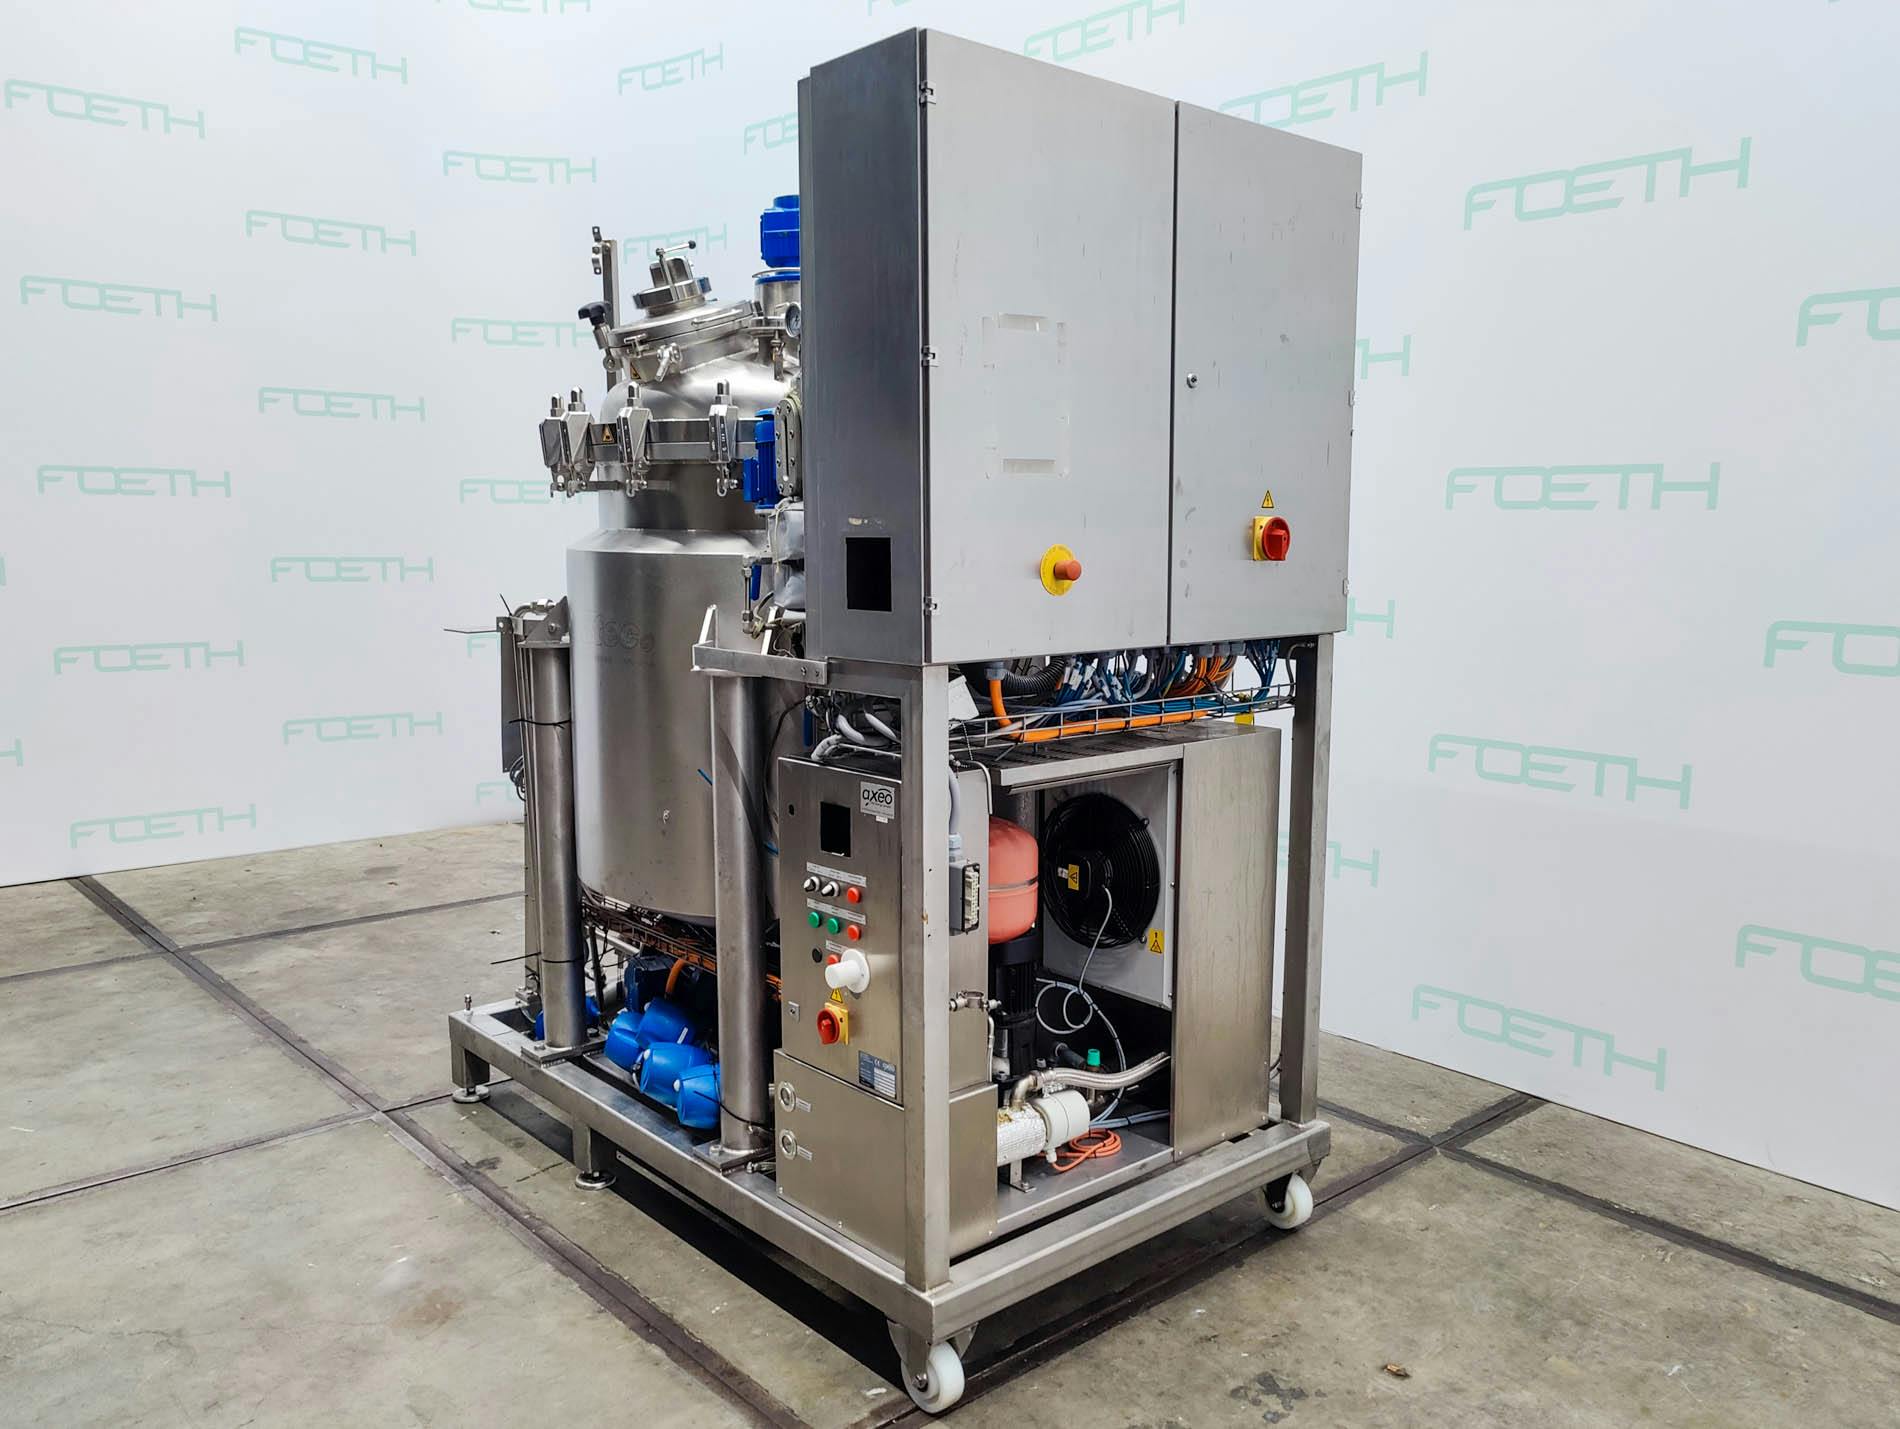 Zoatec Prozessbehaelter 600 - 600 Ltr. (AZO Liquids) - Processing vessel - image 4